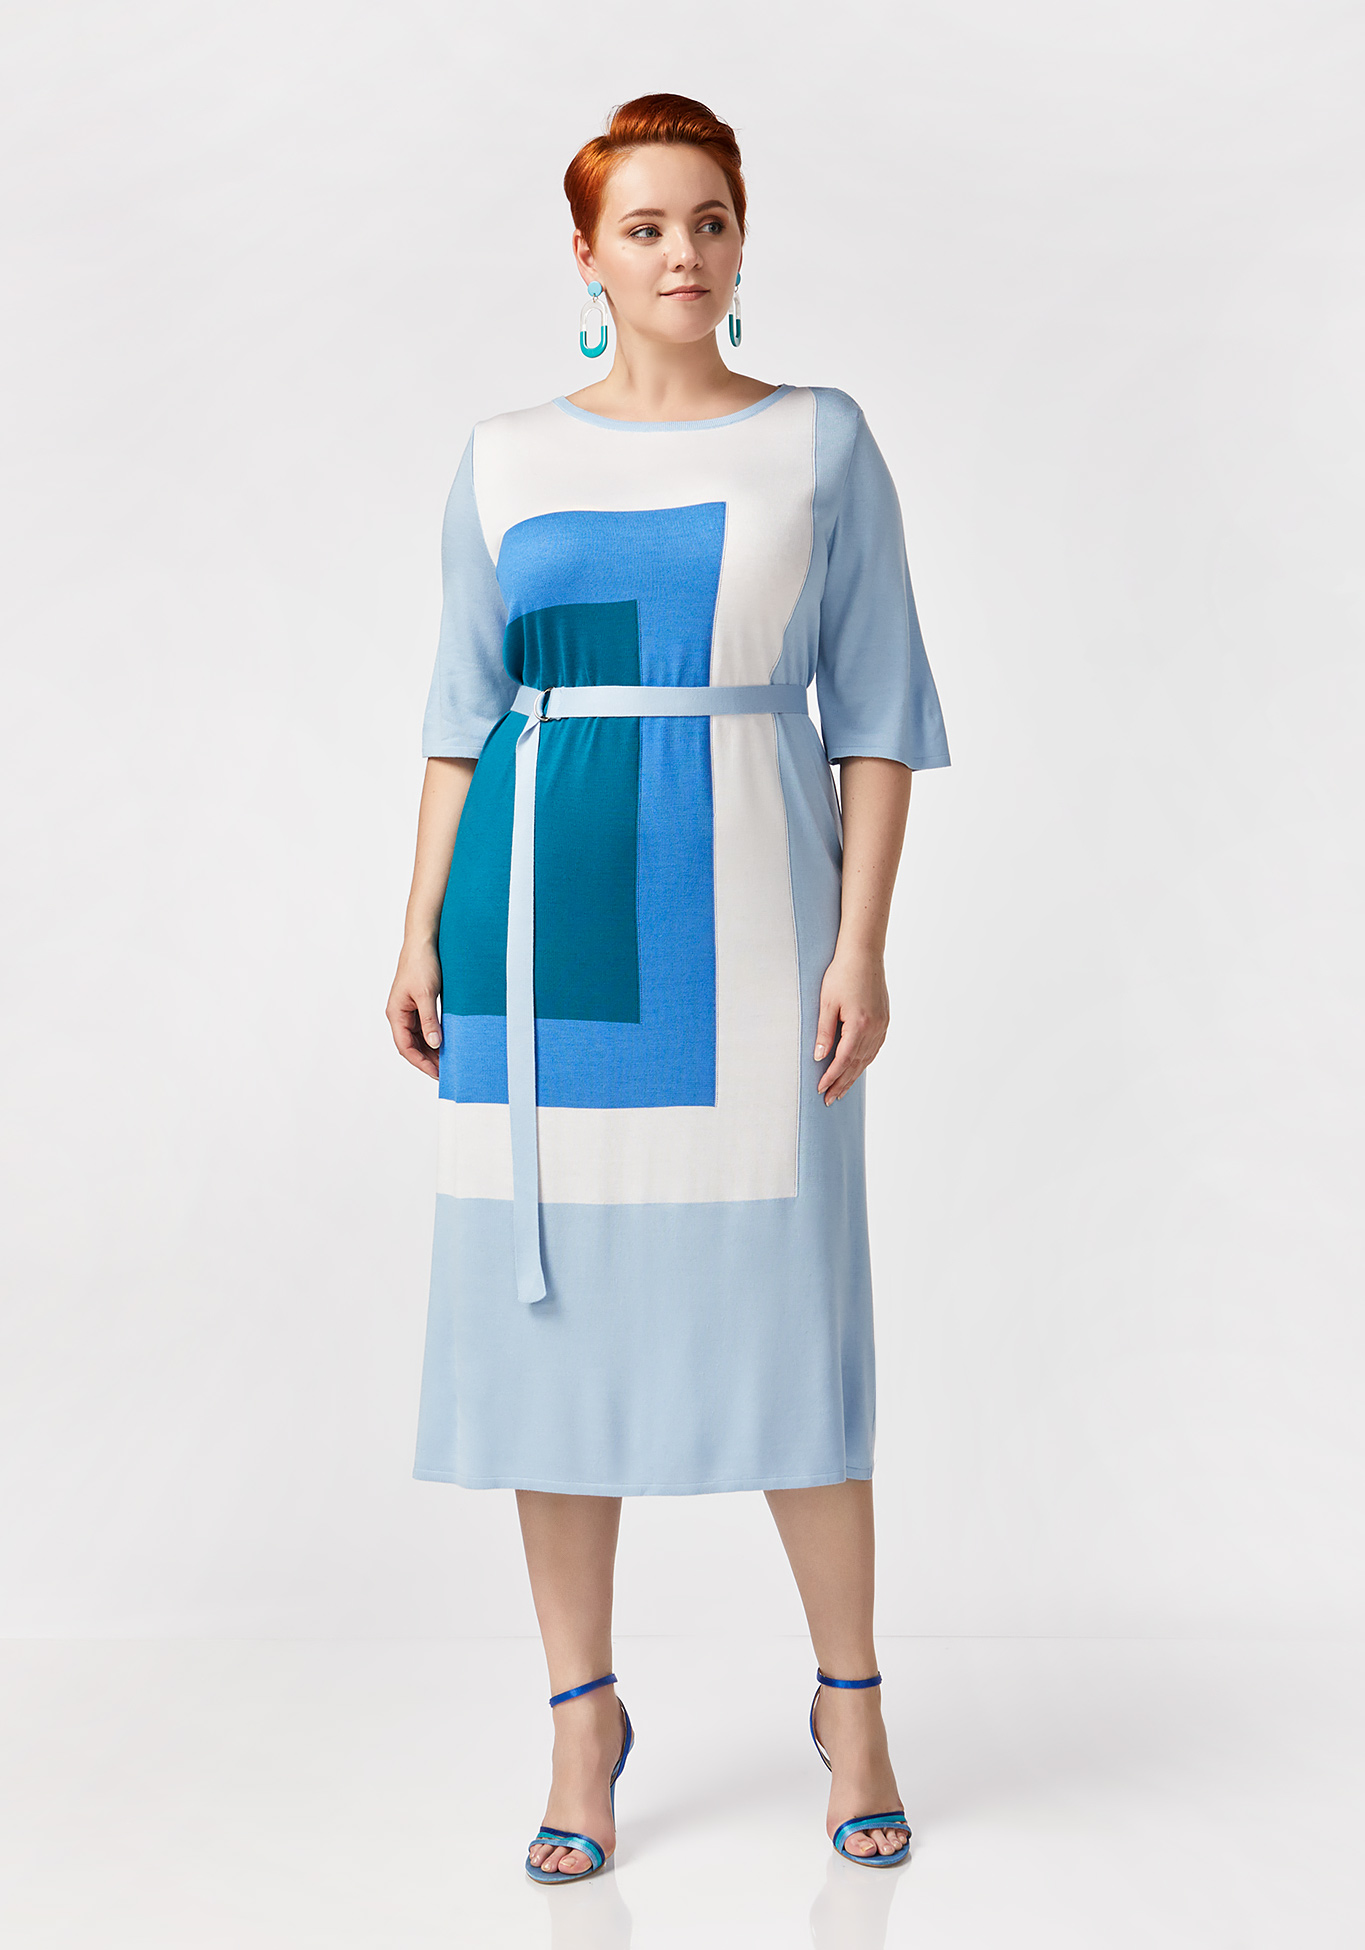 Платье с принтом "коллор блок" Vivawool, размер 42, цвет голубой - фото 1